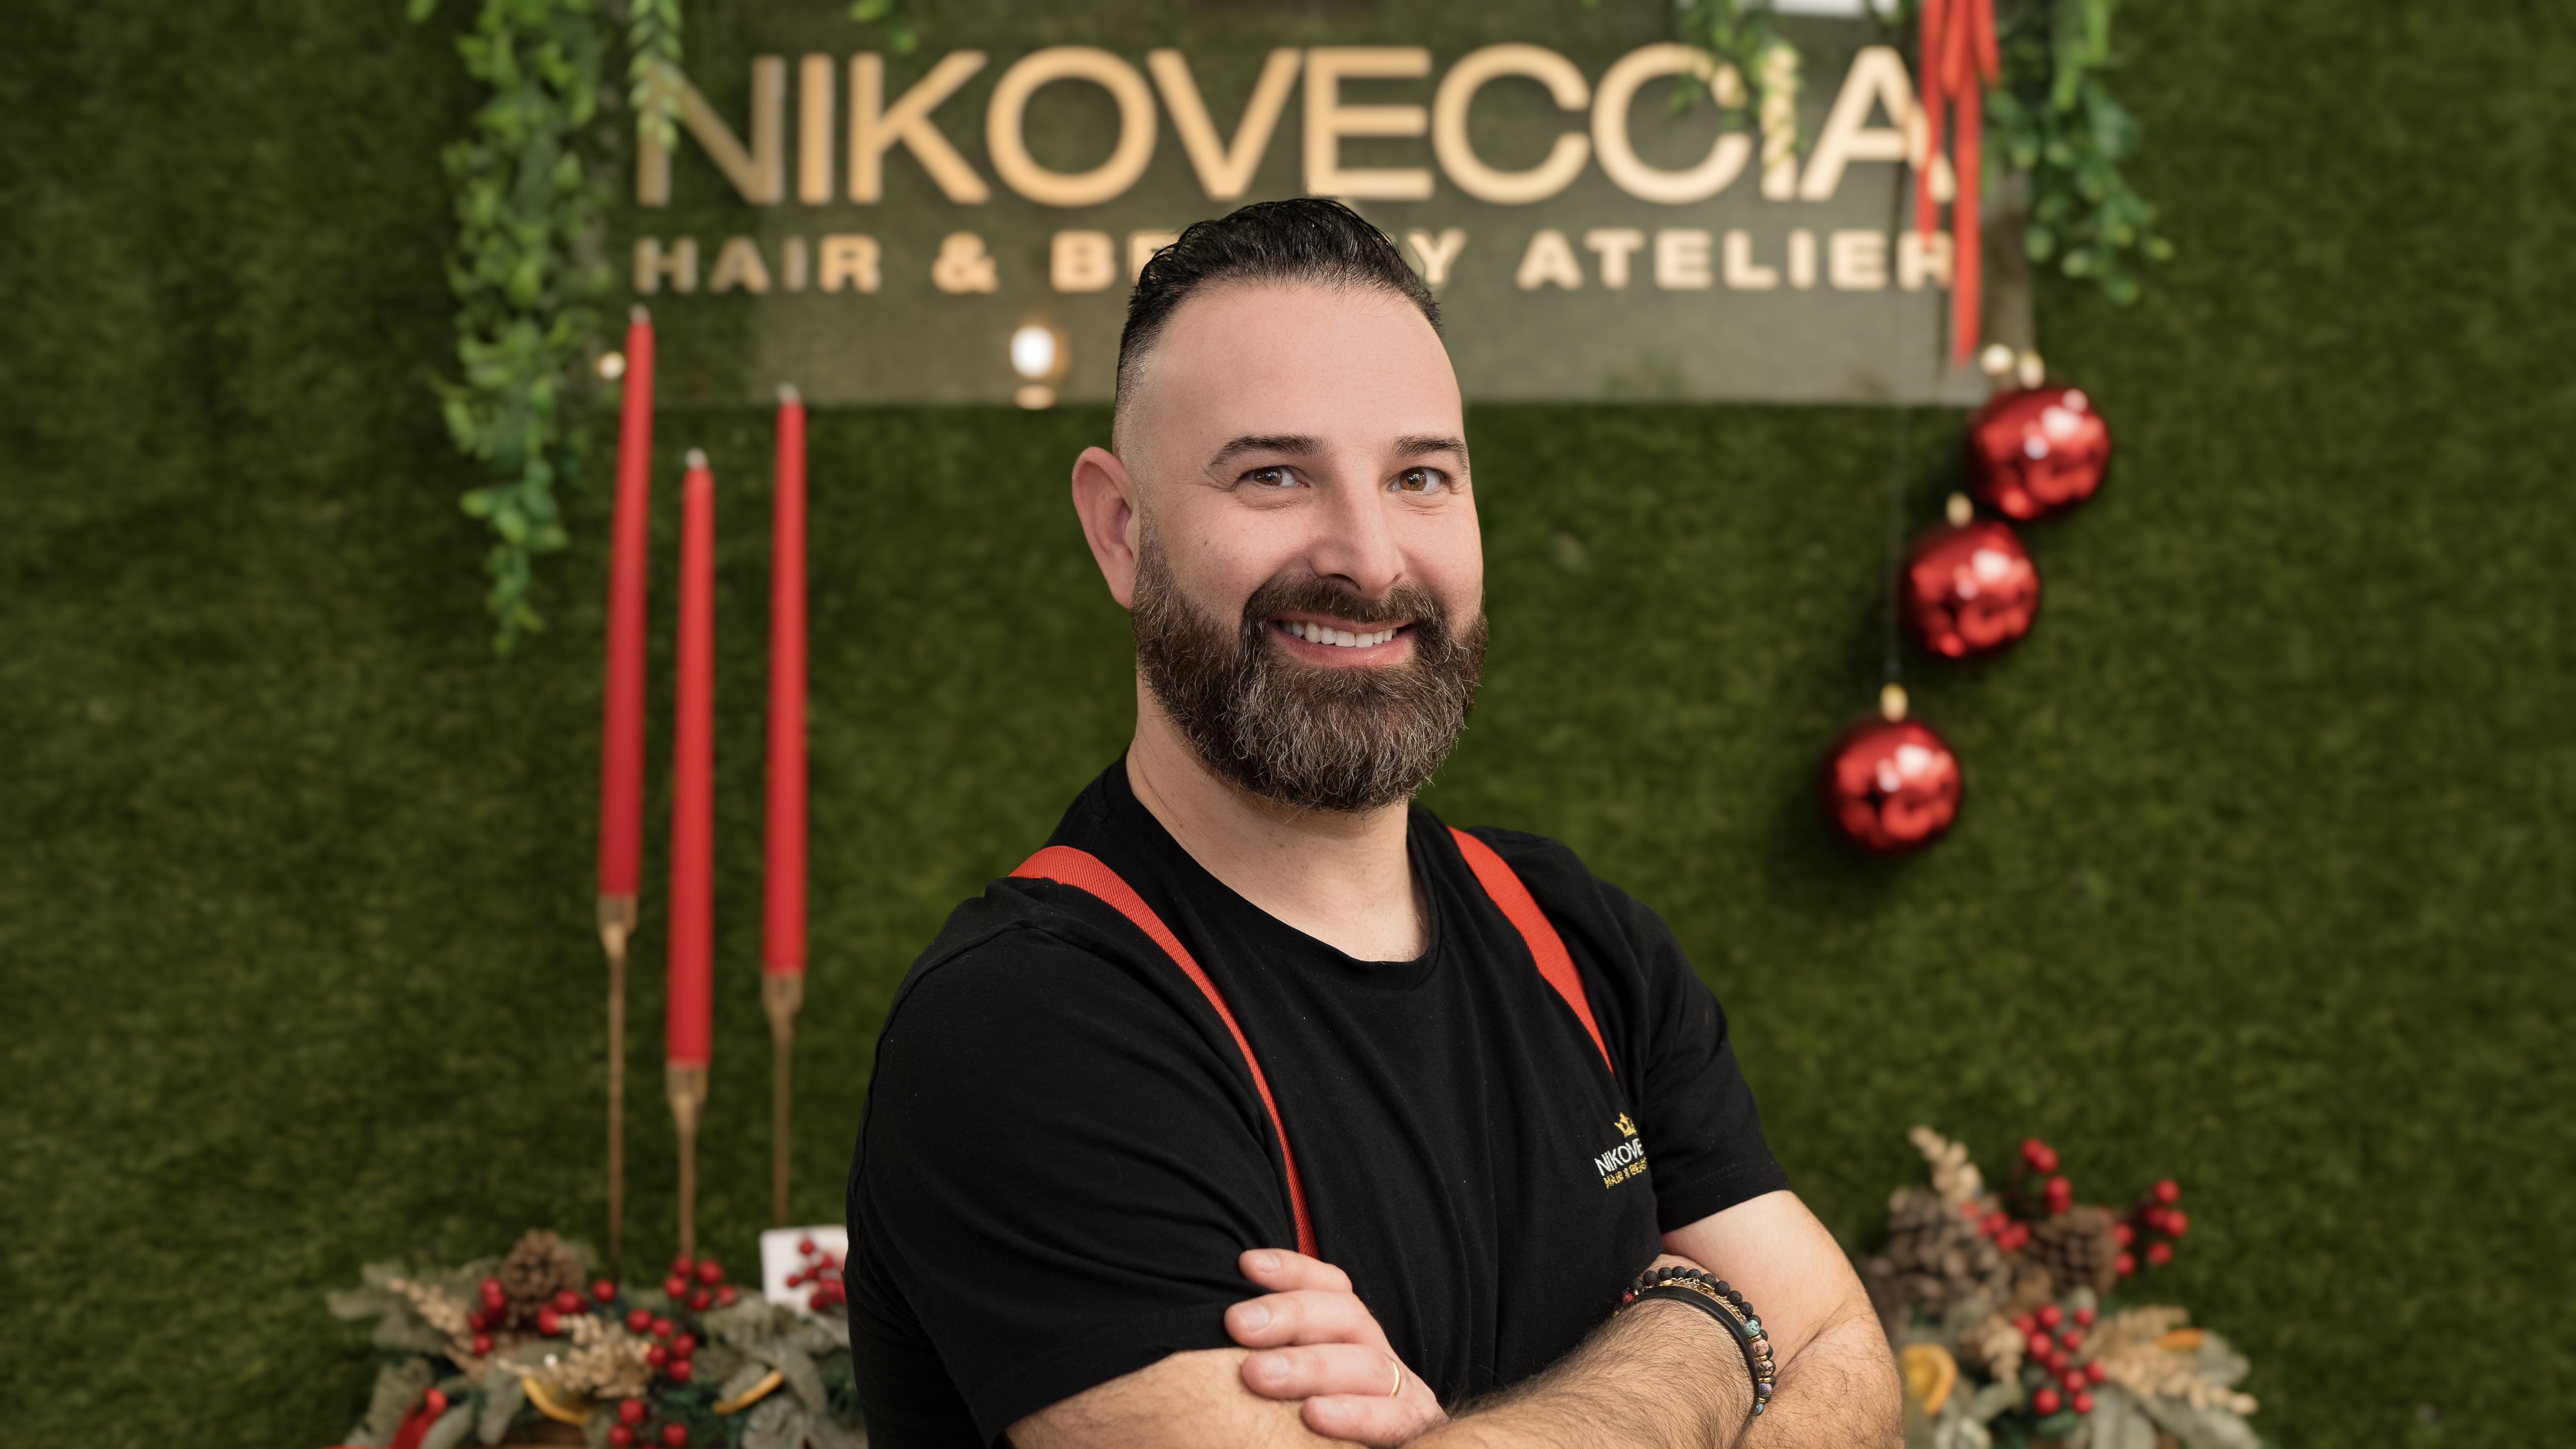 Atmosfera natalizia e regali speciali all'Hair & Beauty Atelier di Niko Veccia